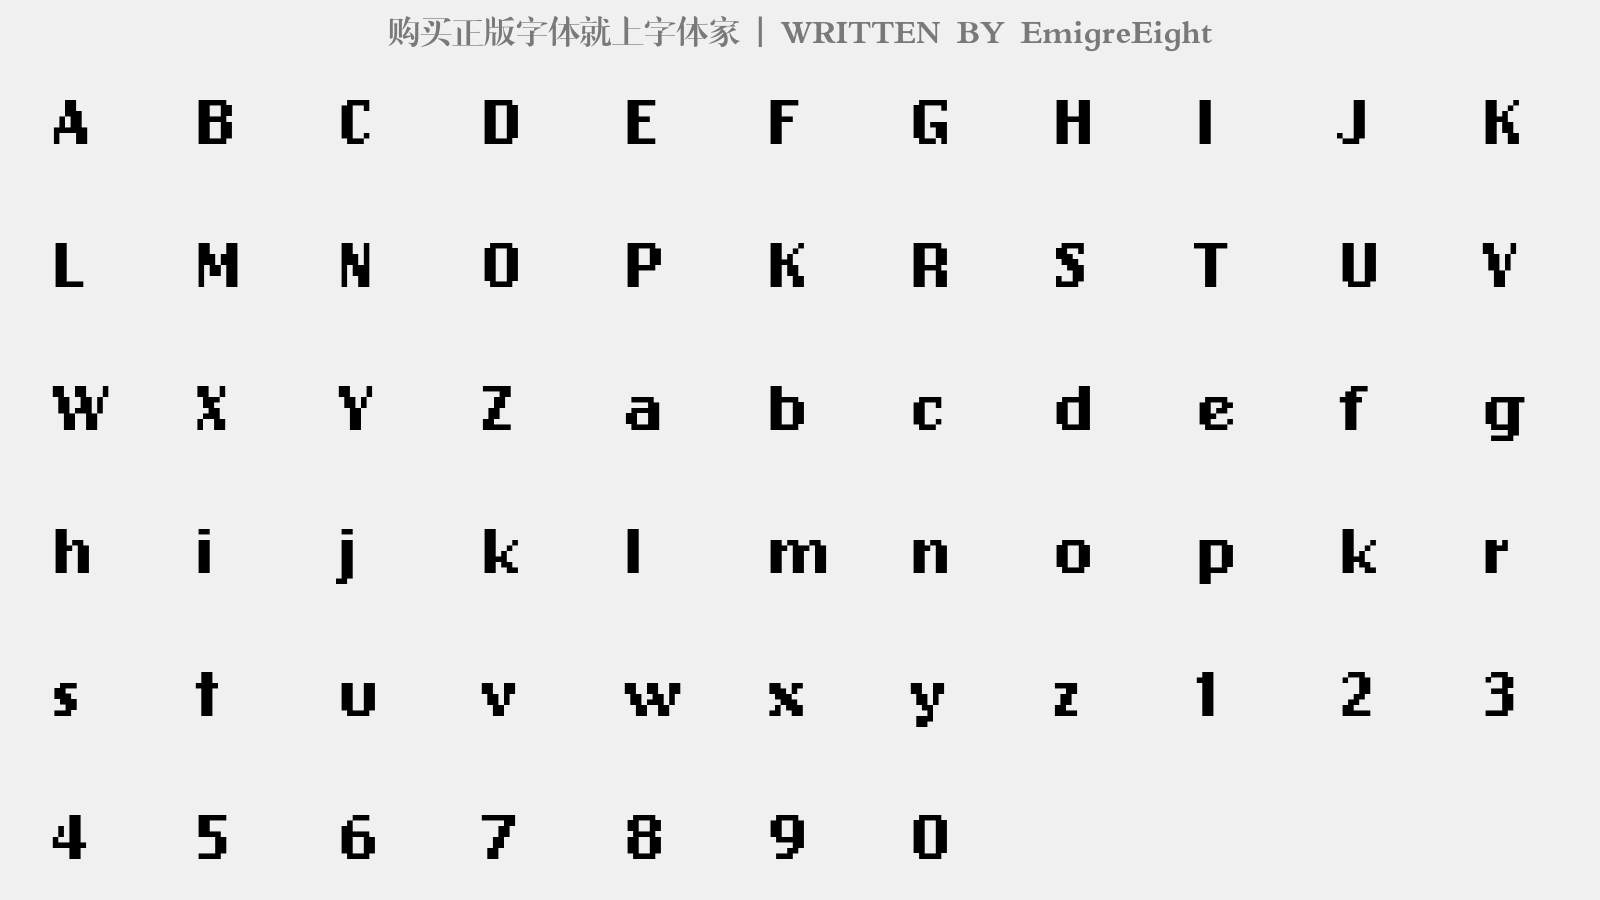 EmigreEight - 大写字母/小写字母/数字